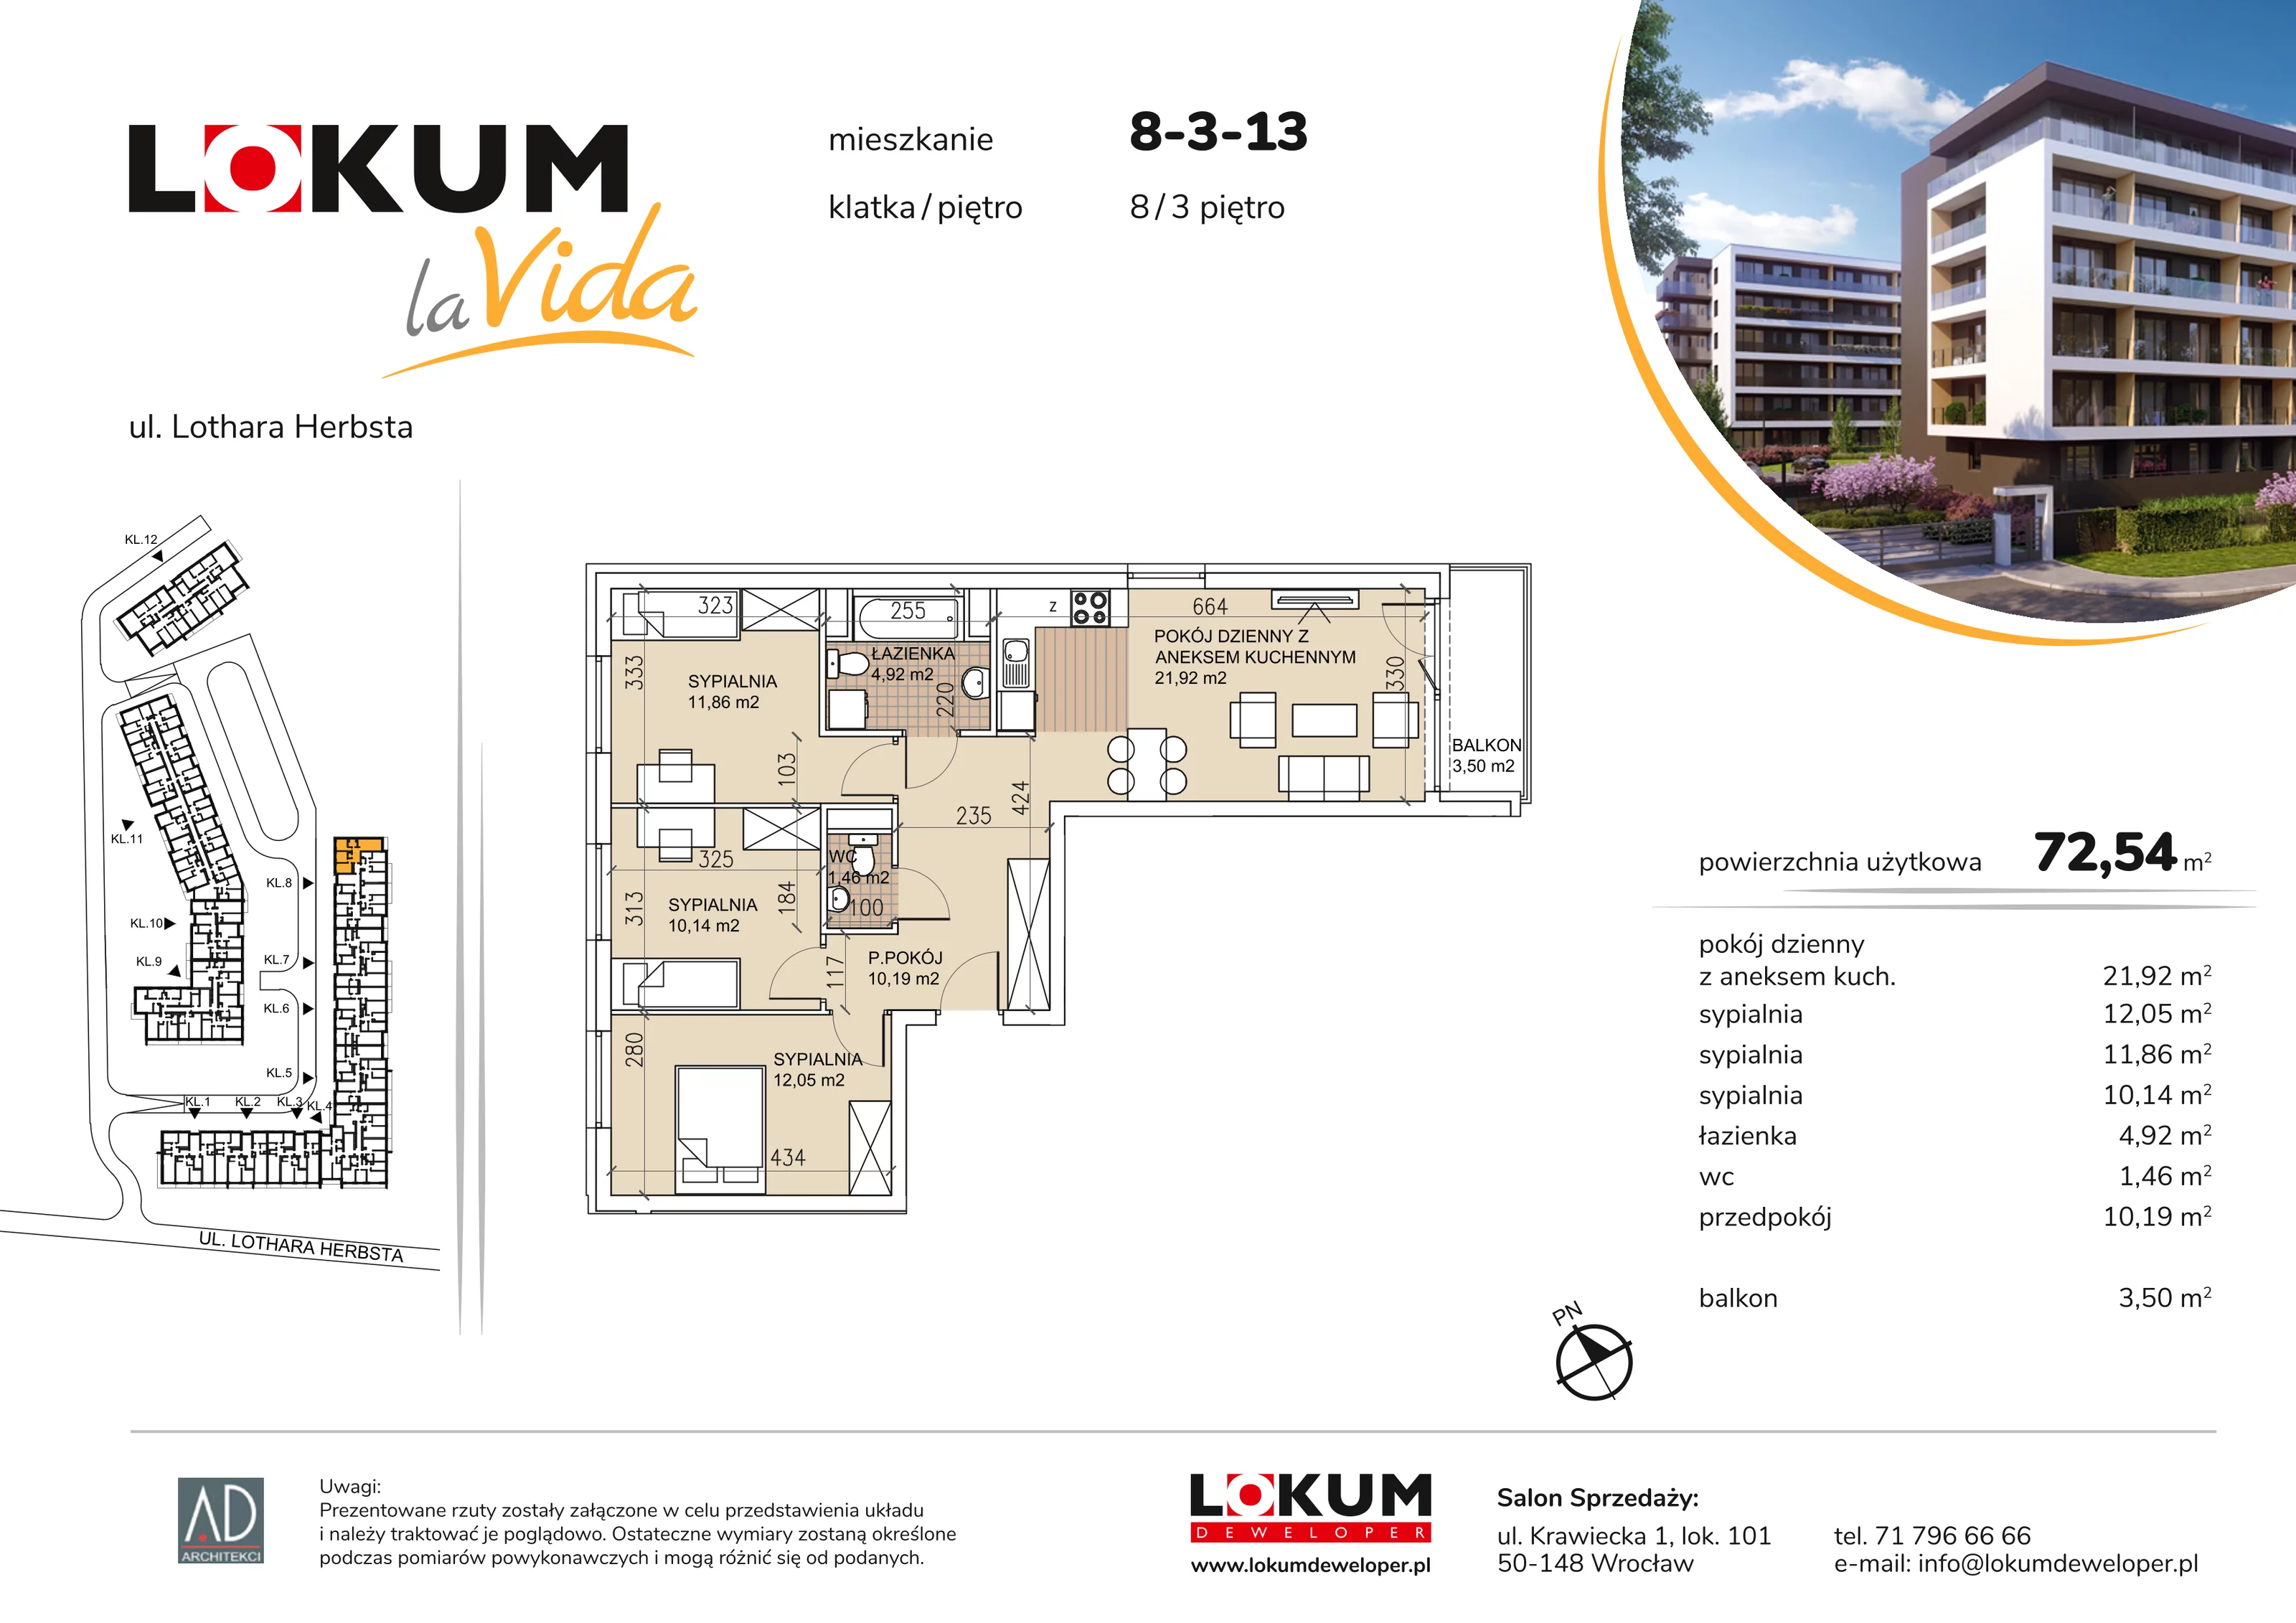 Mieszkanie 72,54 m², piętro 3, oferta nr 8-3-13, Lokum la Vida, Wrocław, Sołtysowice, ul. Lothara Herbsta